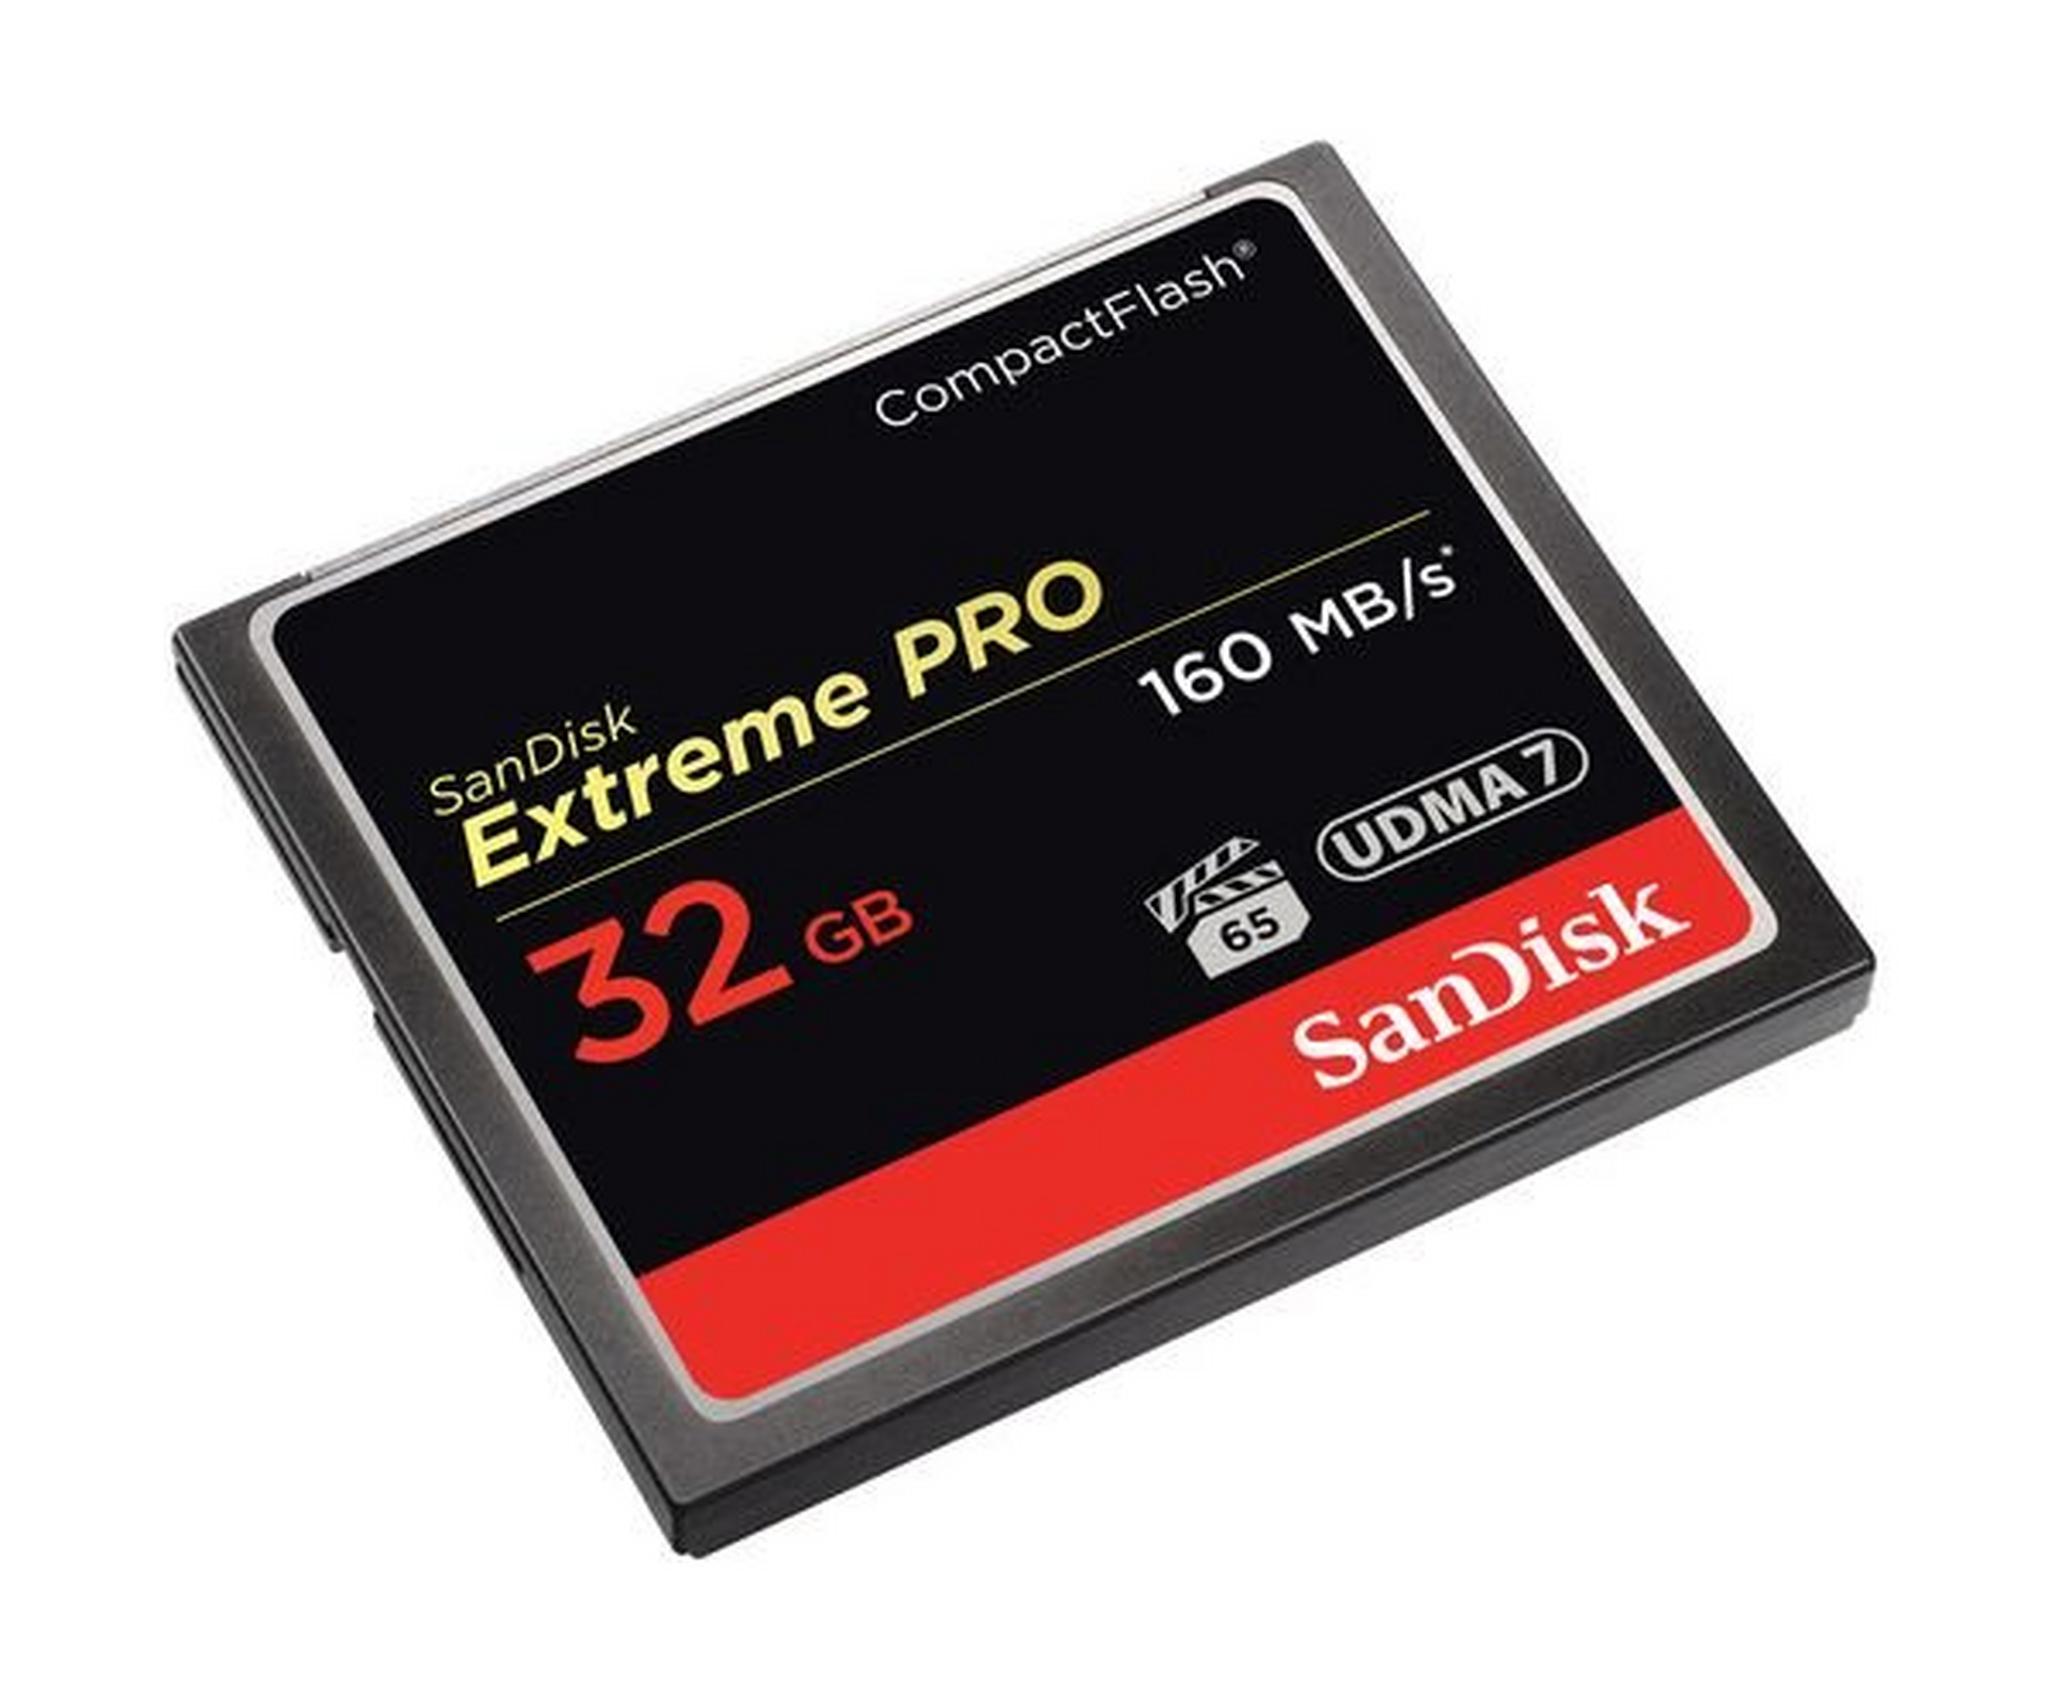 بطاقة ذاكرة اكستريم برو كومباكت فلاش من سانديسك – سعة ٣٢ جيجا بايت - سرعة ١٦ ميجا بايت/ثانية (SDCFXPS-032G-X46 XP)